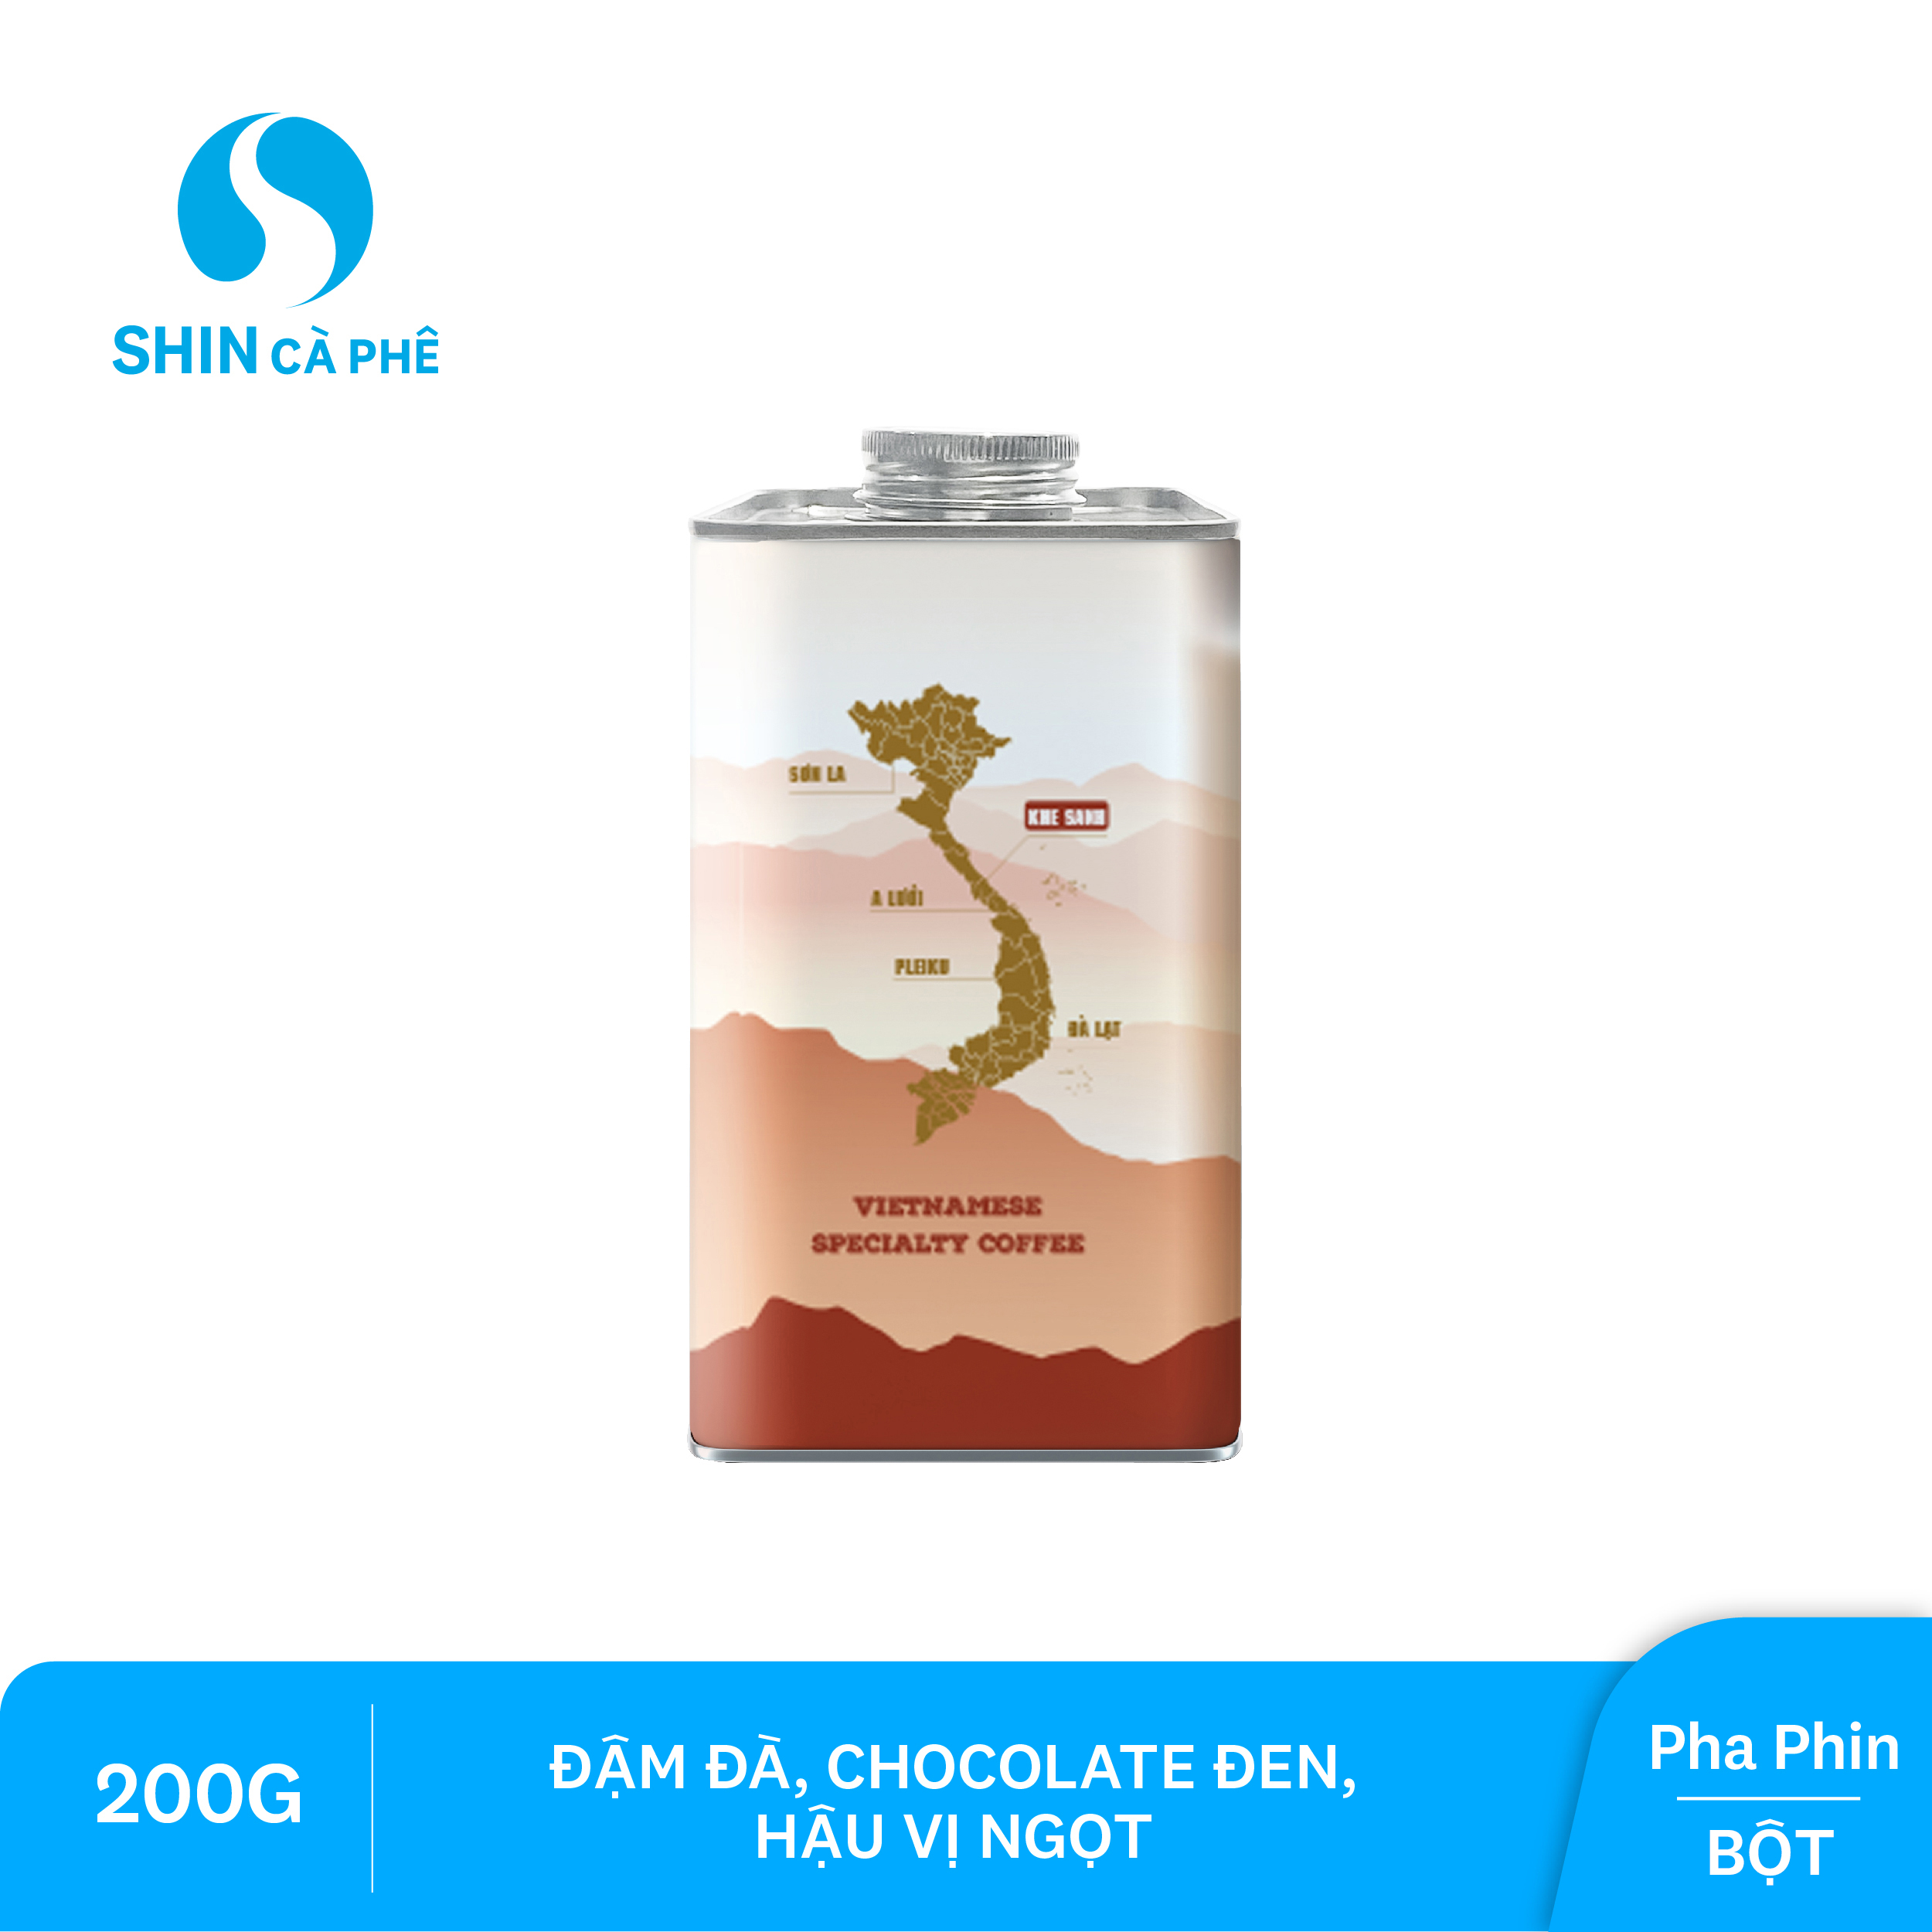 SHIN Cà phê - Cà phê pha phin Khe Sanh Blend - Hộp thiếc 200 gram (Bột)